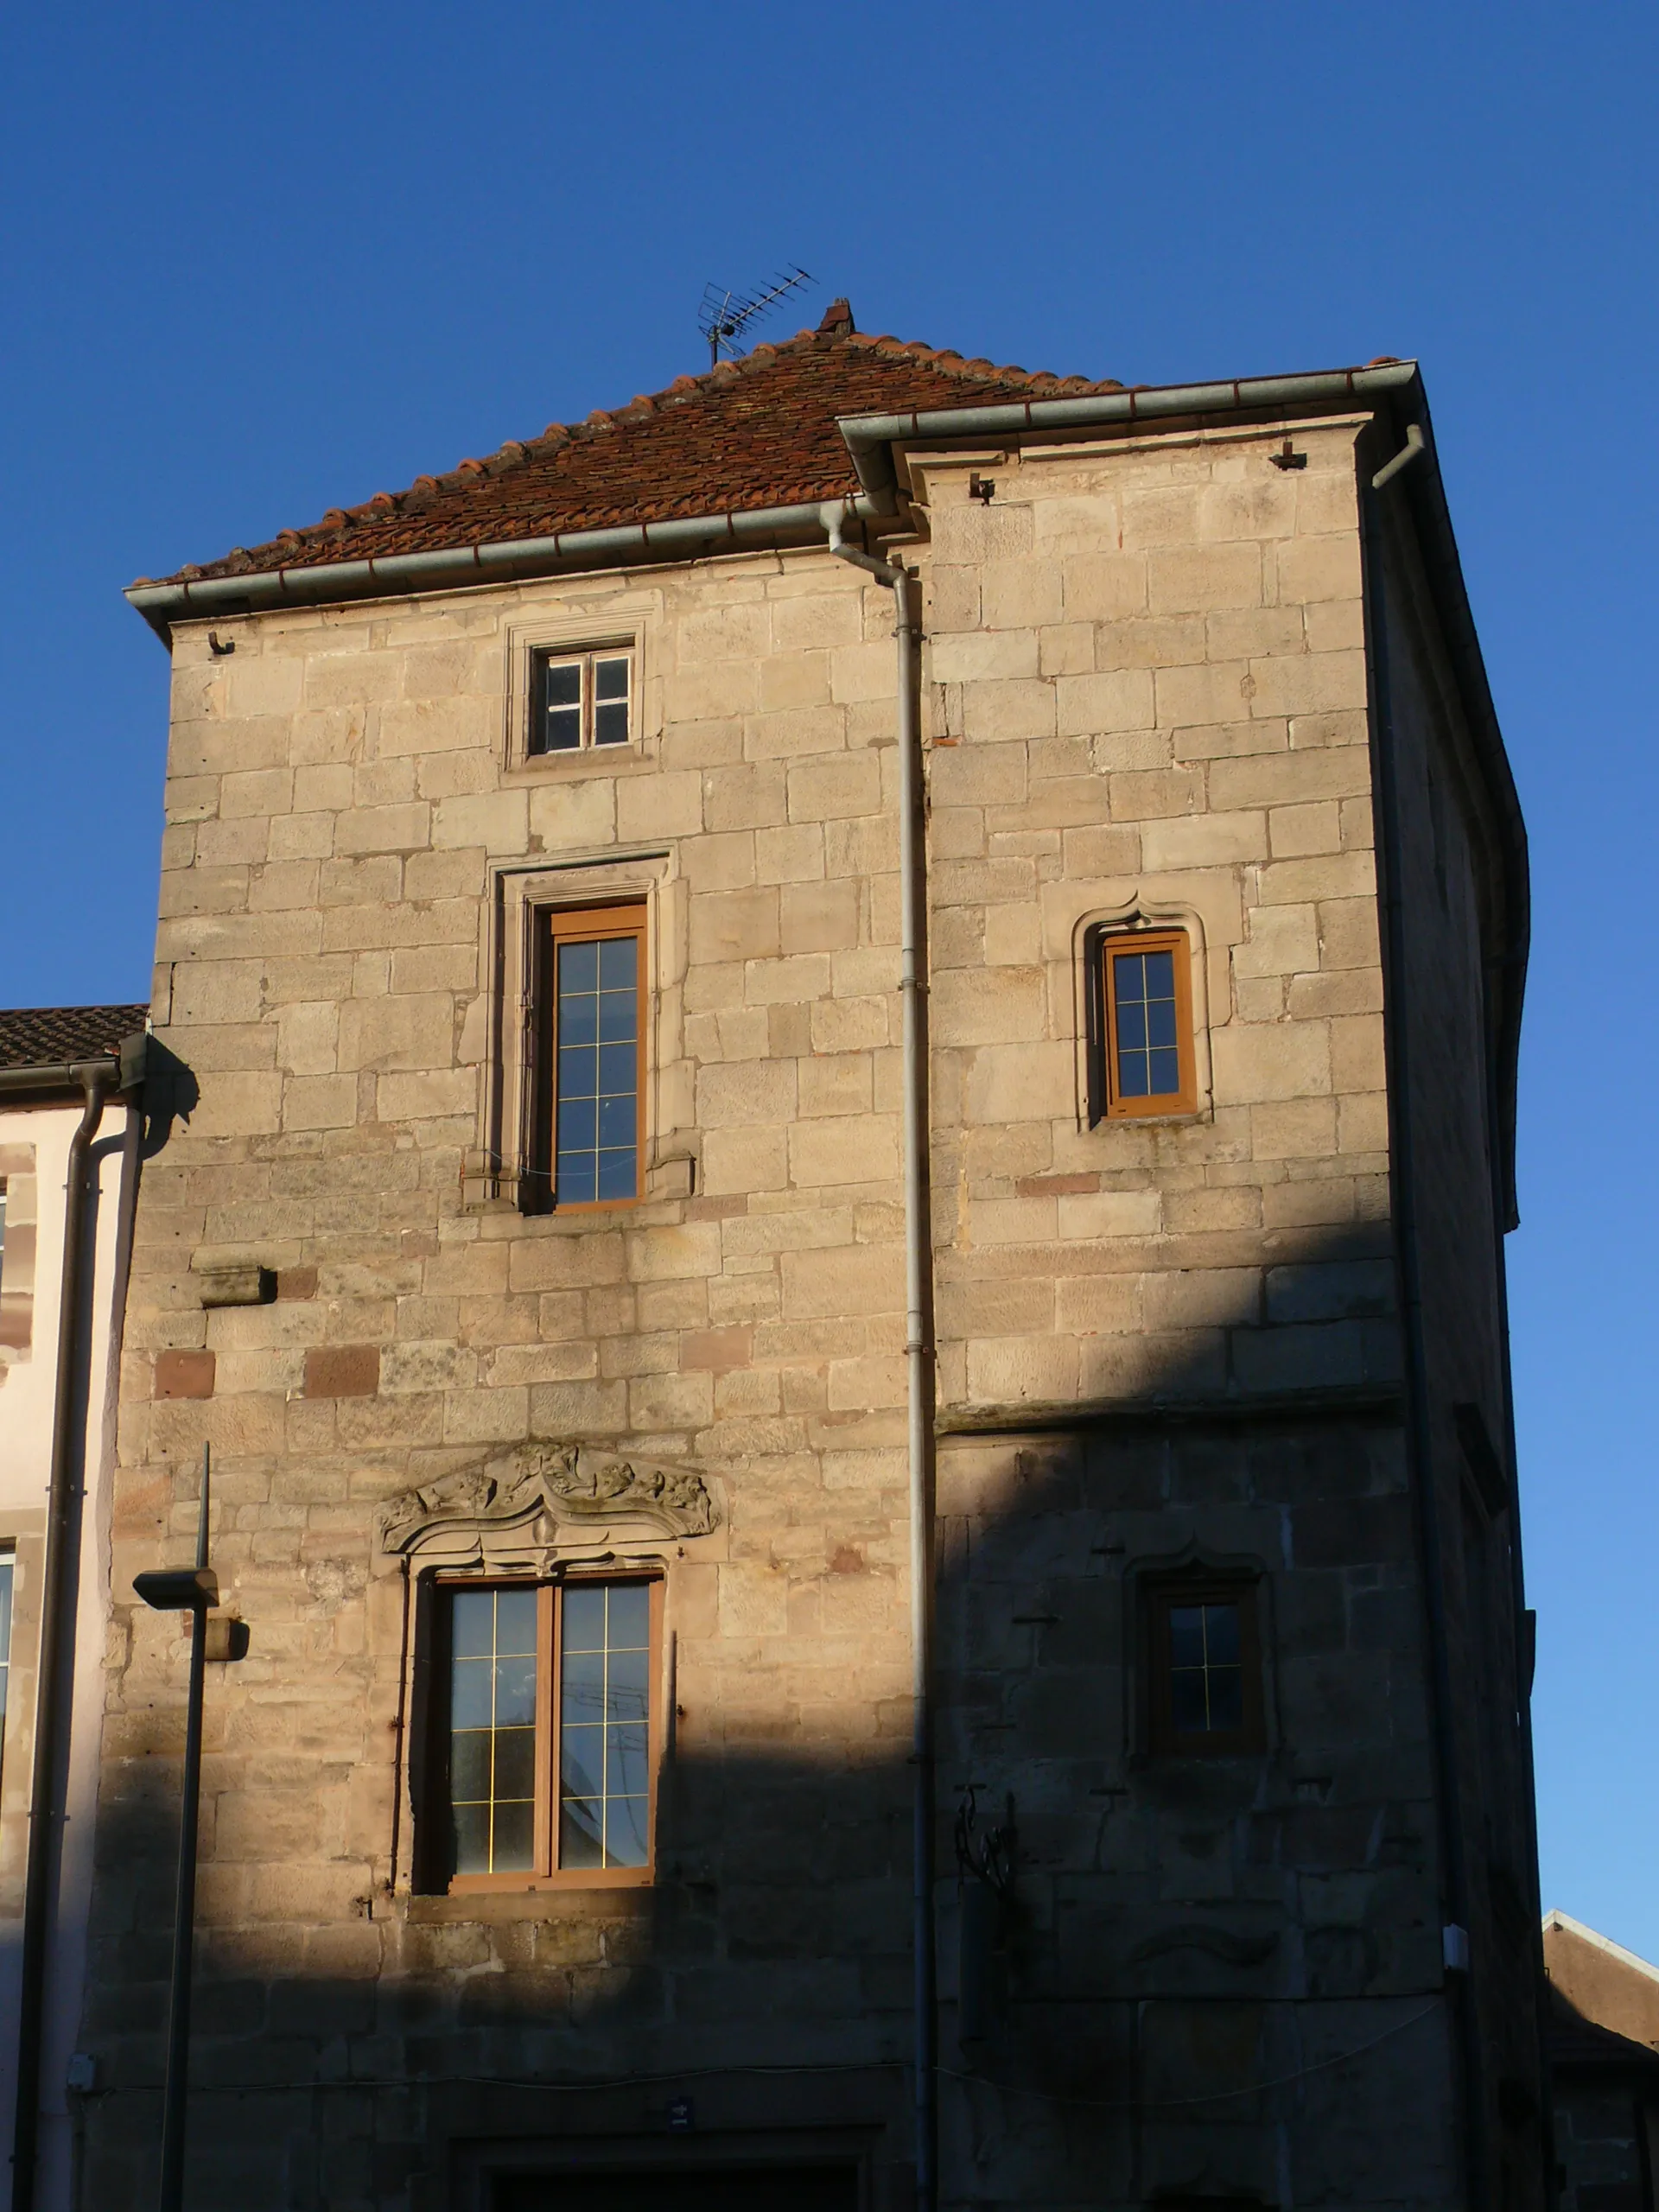 Photo showing: Maison à l'oriflamme, Luxeuil-les-Bains (Haute-Saône, France), late 16th c.